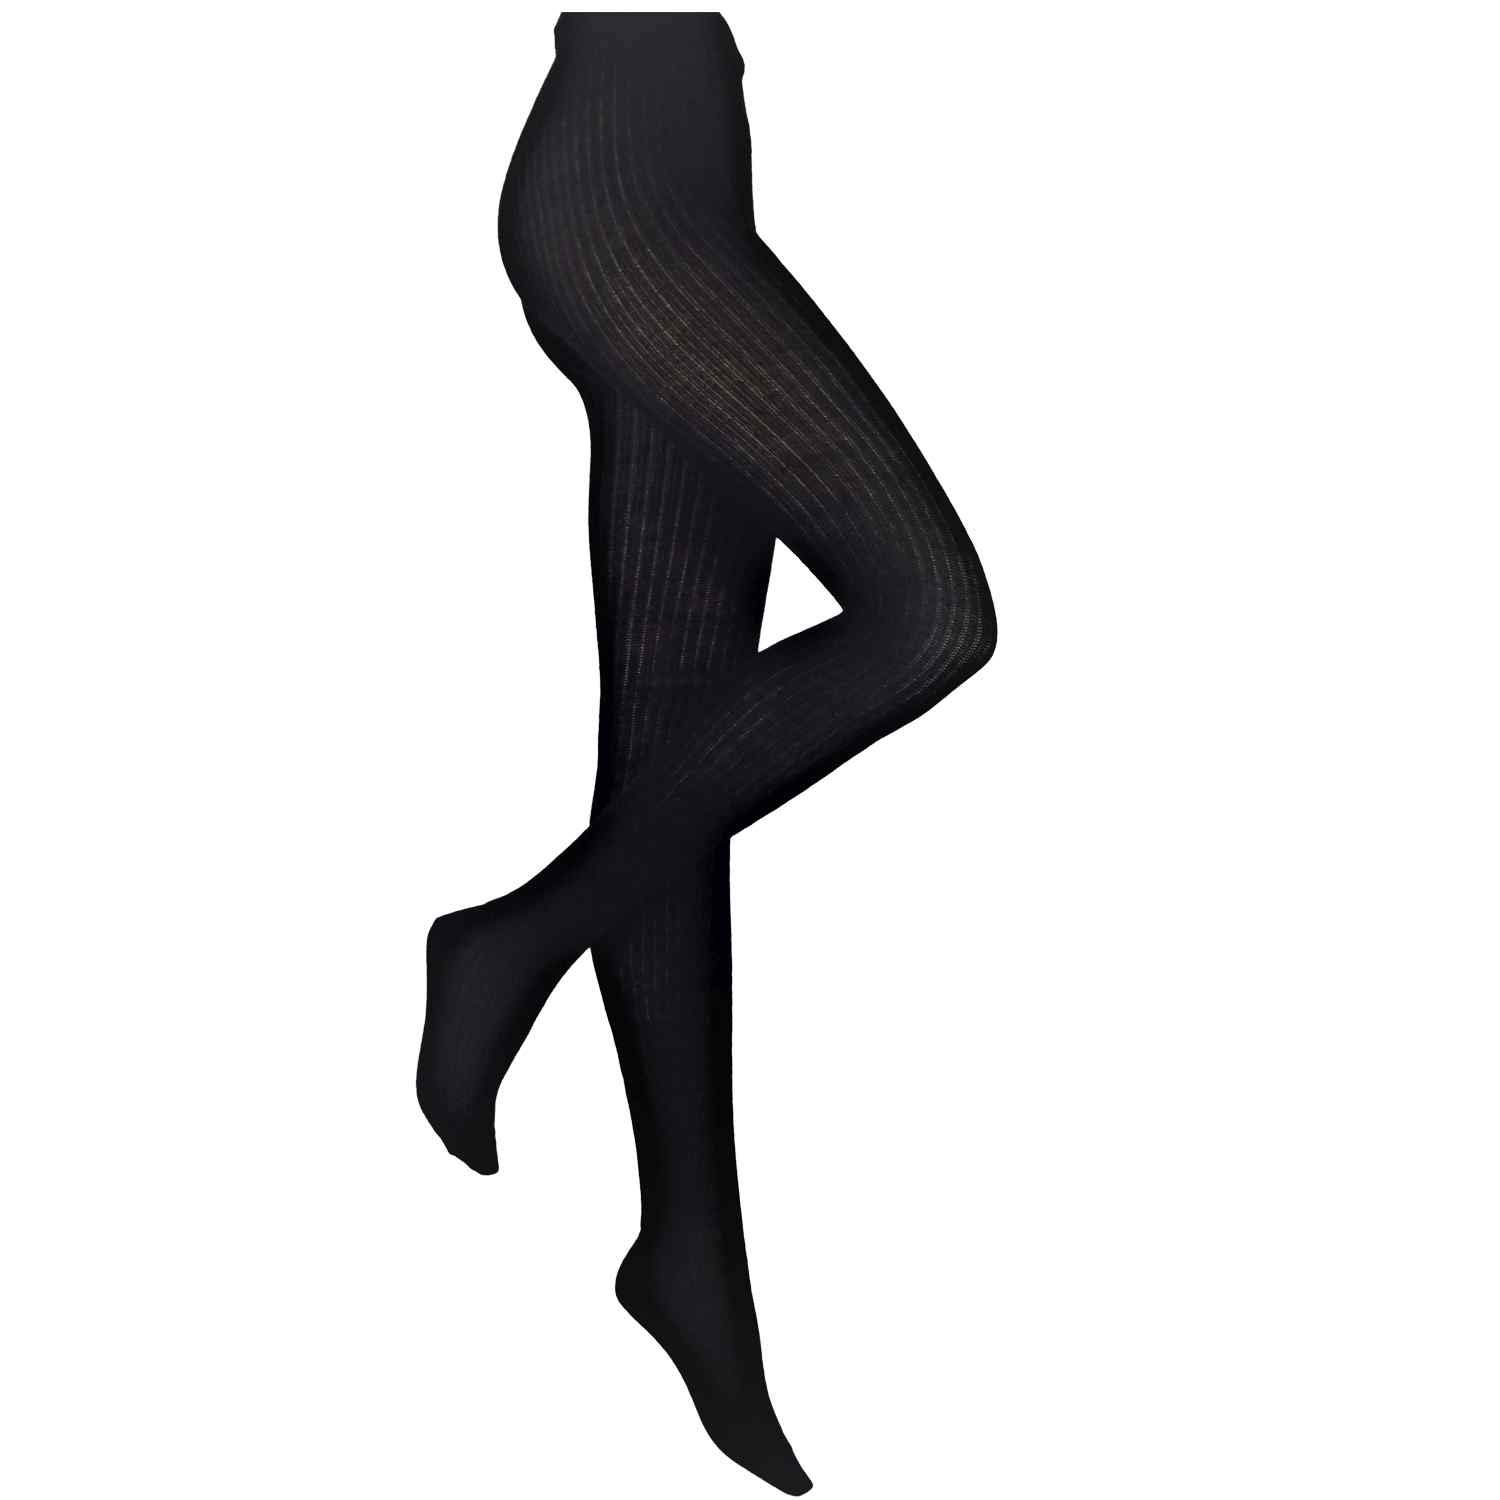 Shimasocks Kuschelig warme & sehr bequeme Damenstrumpfhose - Damen Strumpfhose in 2:1 Rippe, Größe:40/42, Farben 2021:schwarz